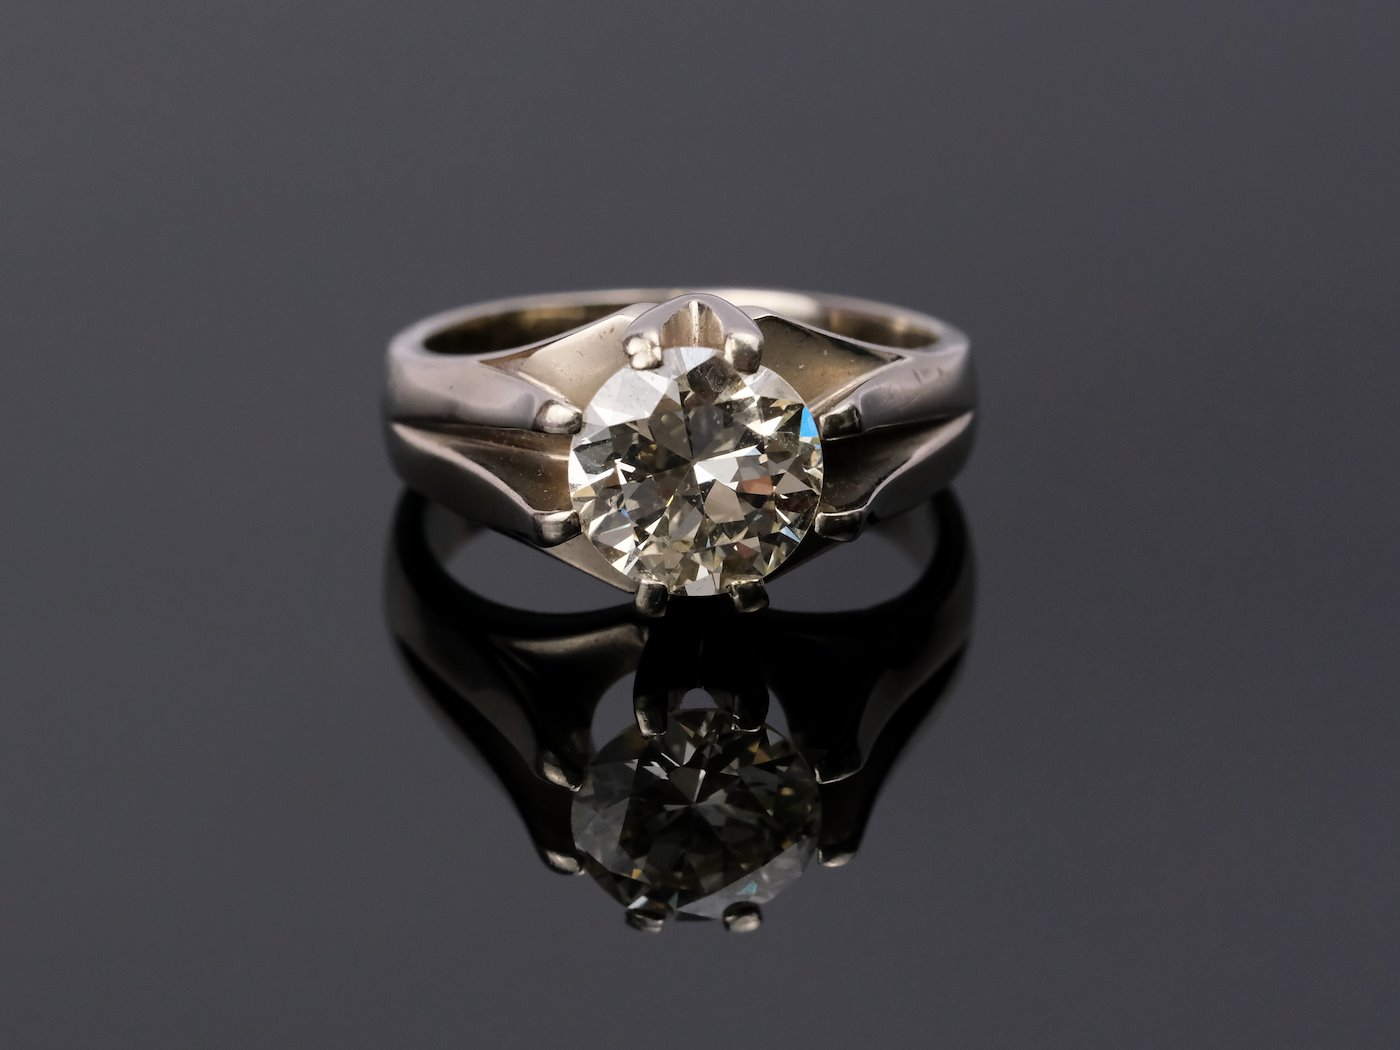 .. - Luxusní prsten s diamantem 2,36 ct, zlato 750/1000, značeno platnou puncovní značkou "kohout", hrubá hmotnost 9,10 g